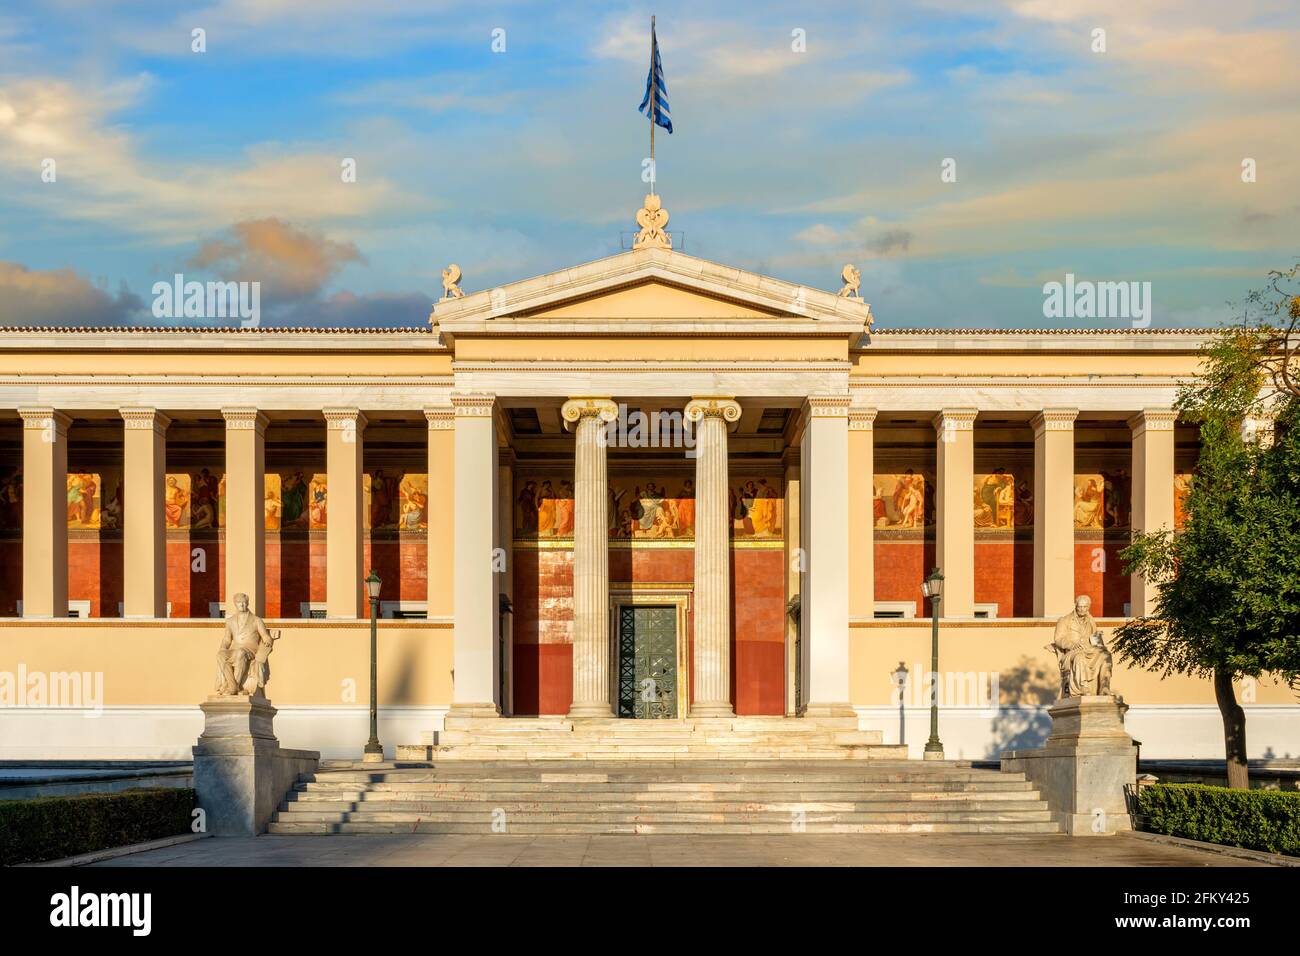 Athènes, Attique, Grèce. Le bâtiment néoclassique de l'Université nationale et de l'Université Kapodistrian d'Athènes. Vue sur la façade au coucher du soleil avec ciel nuageux et coloré Banque D'Images